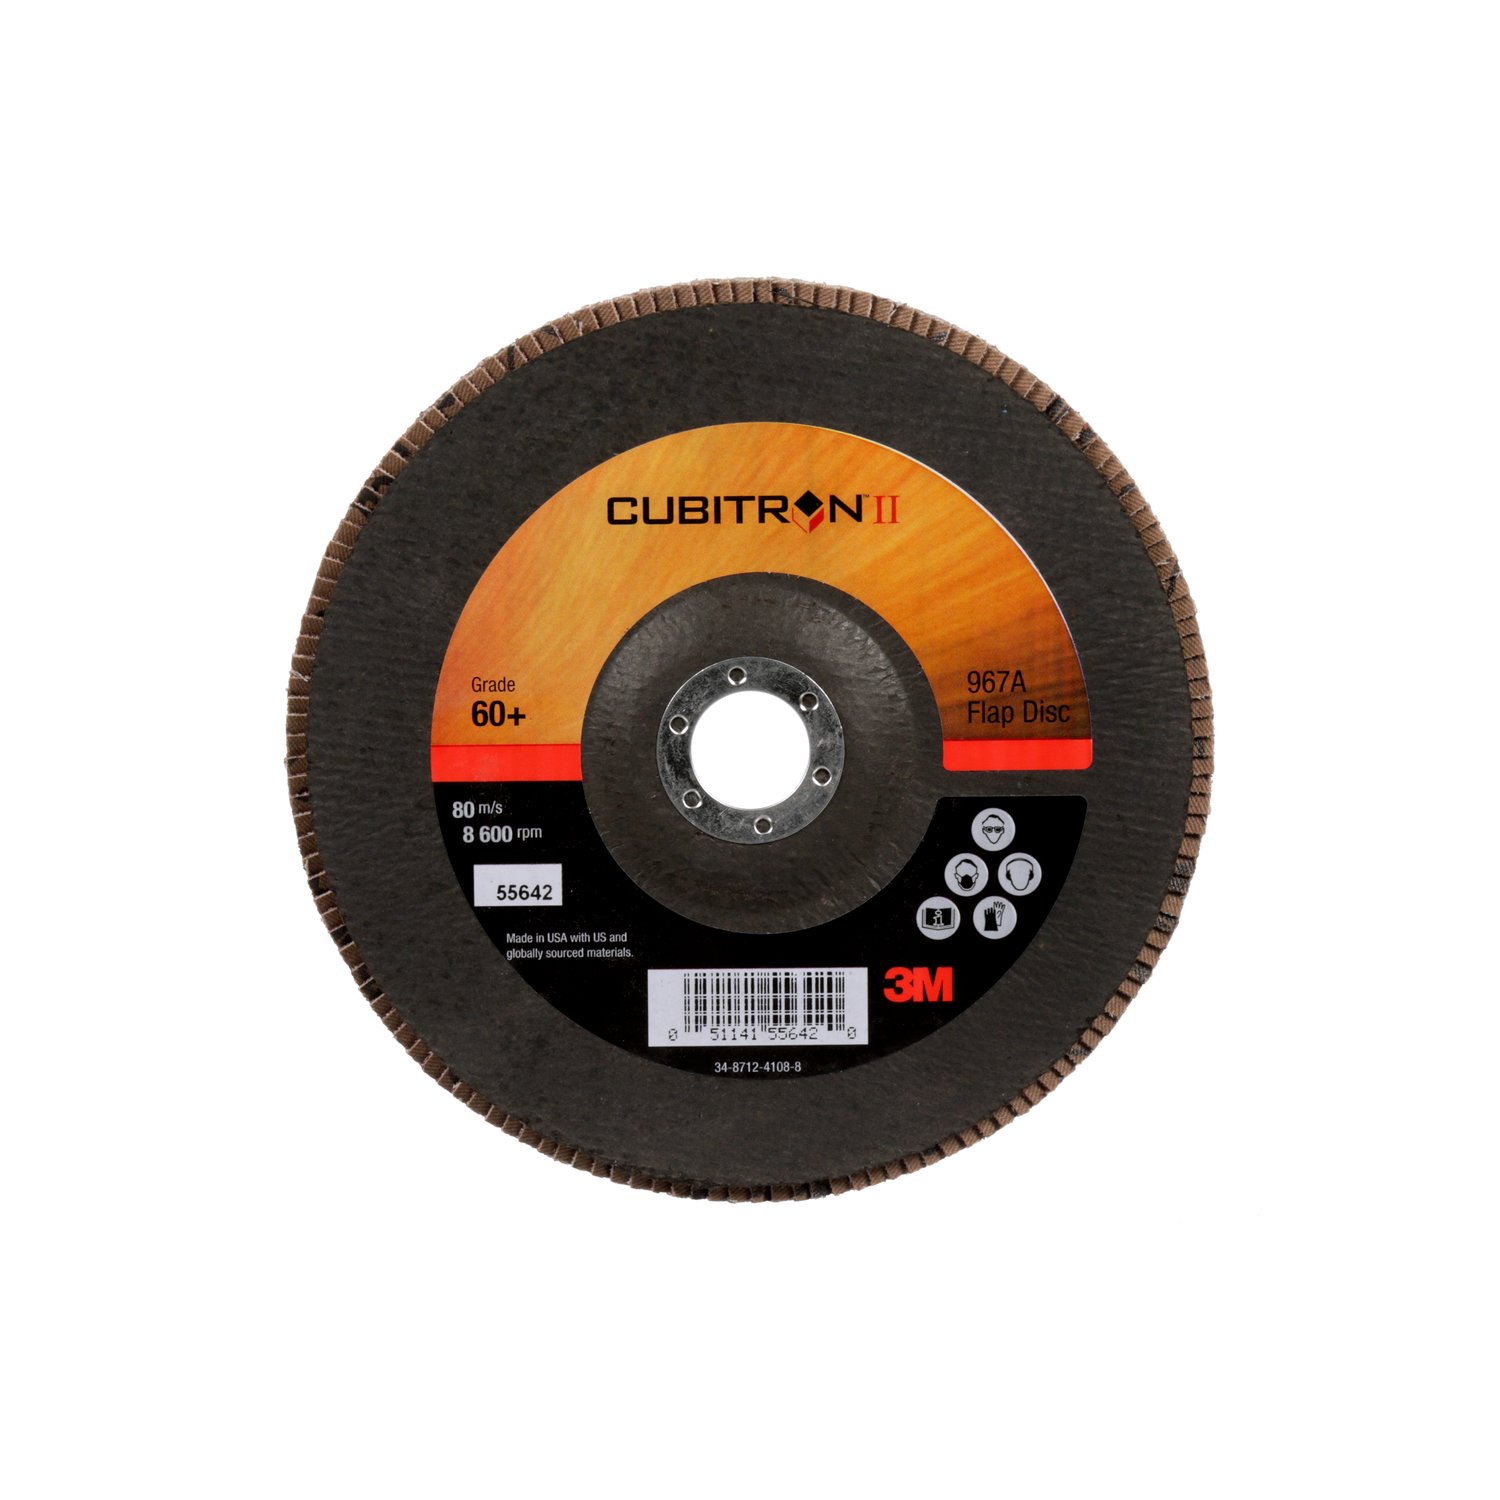 7010363305 - 3M Cubitron II Flap Disc 967A, 60+, T27, 7 in x 7/8 in, Giant, 5
ea/Case